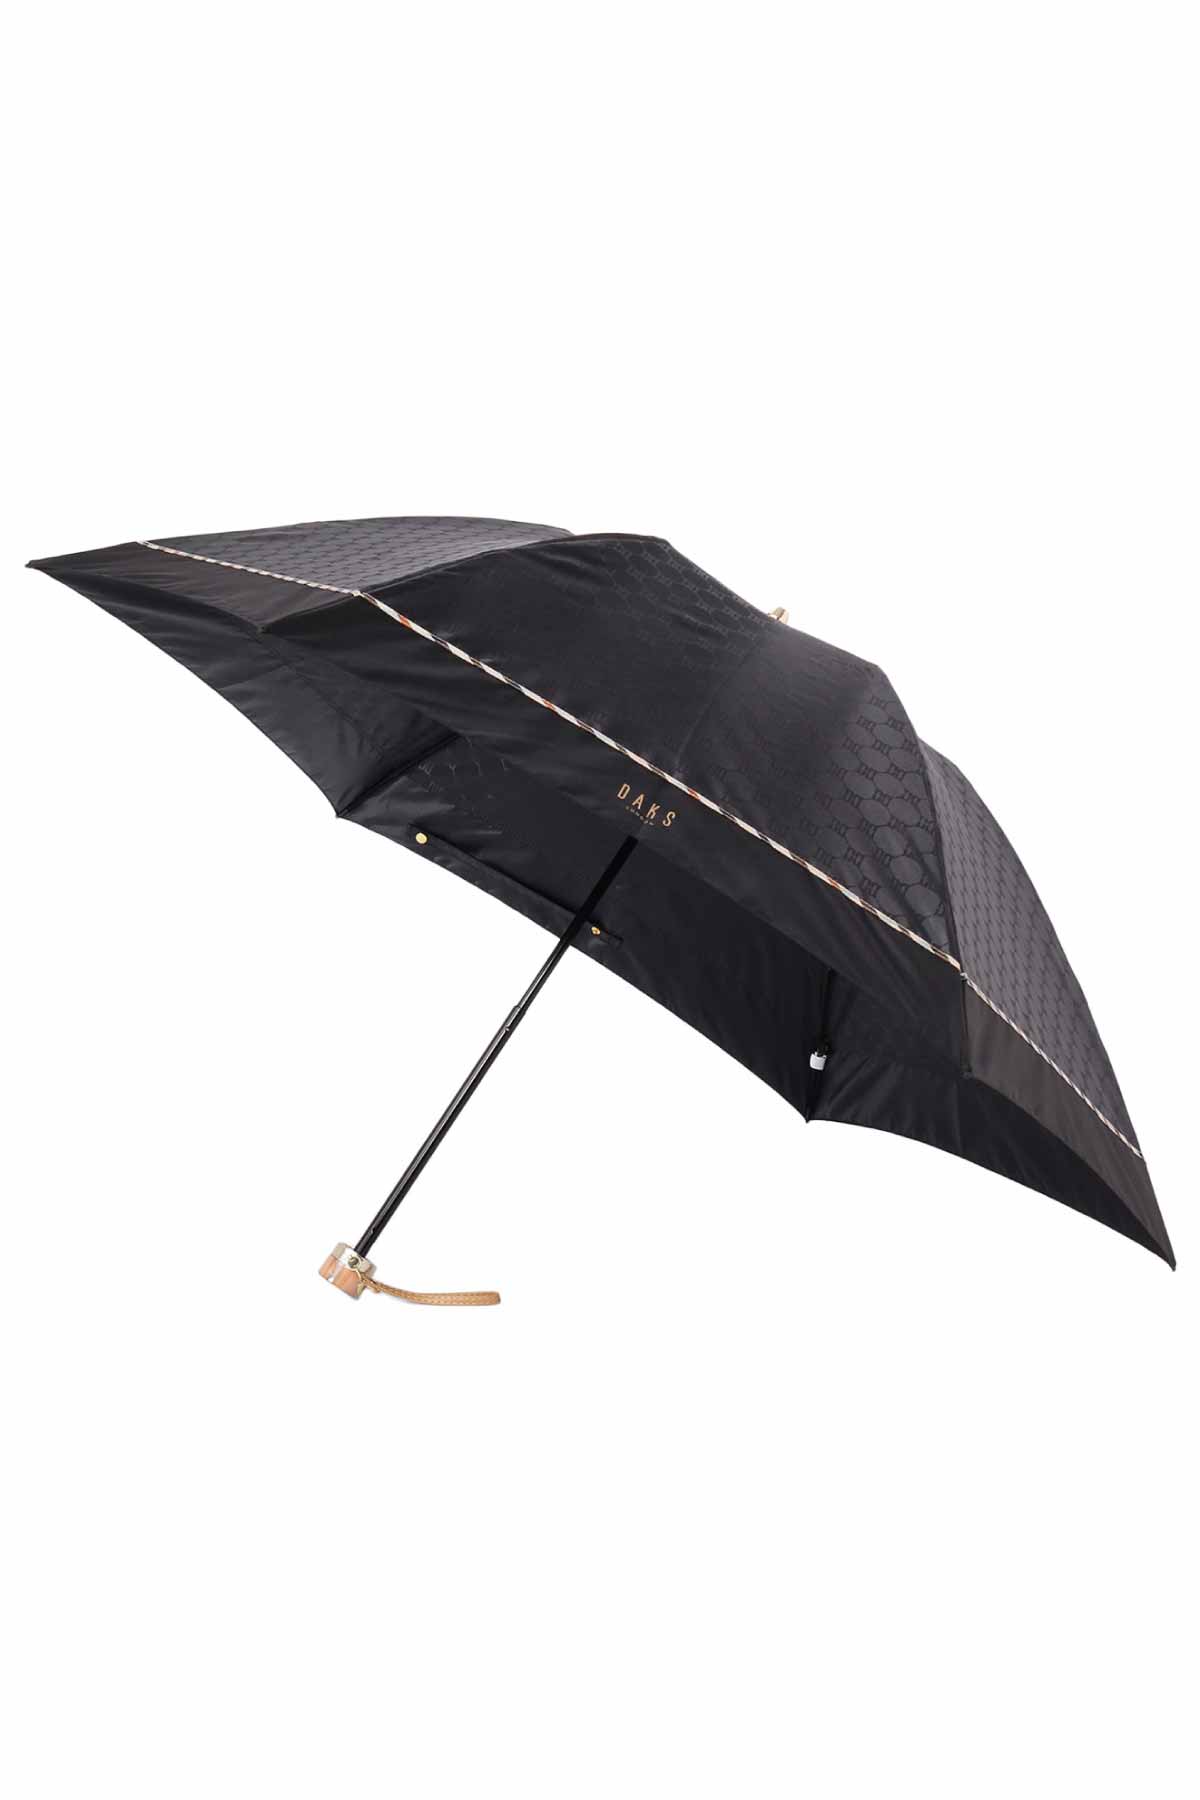 【雨傘】折りたたみ傘クイックアーチジャカード 詳細画像 1